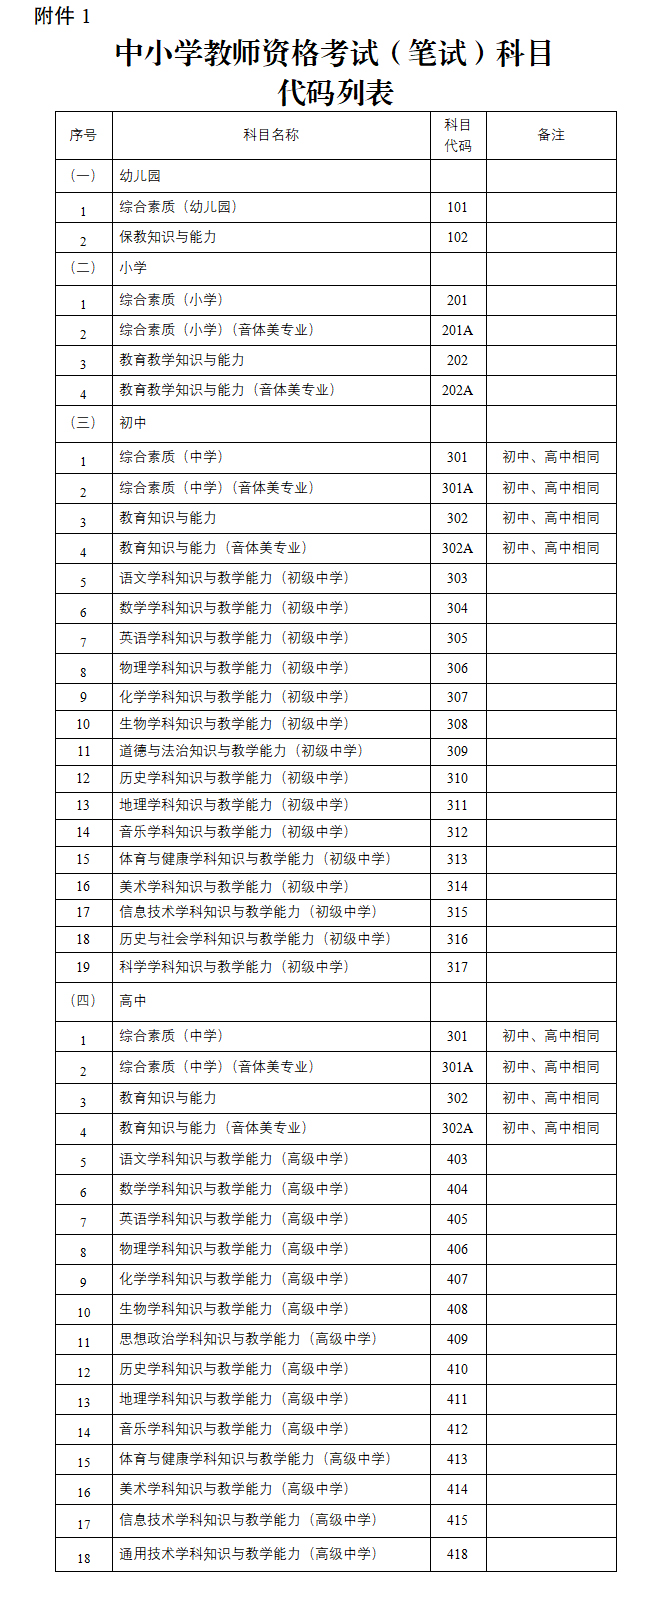 中小学教师资格考试(笔试)科目代码列表